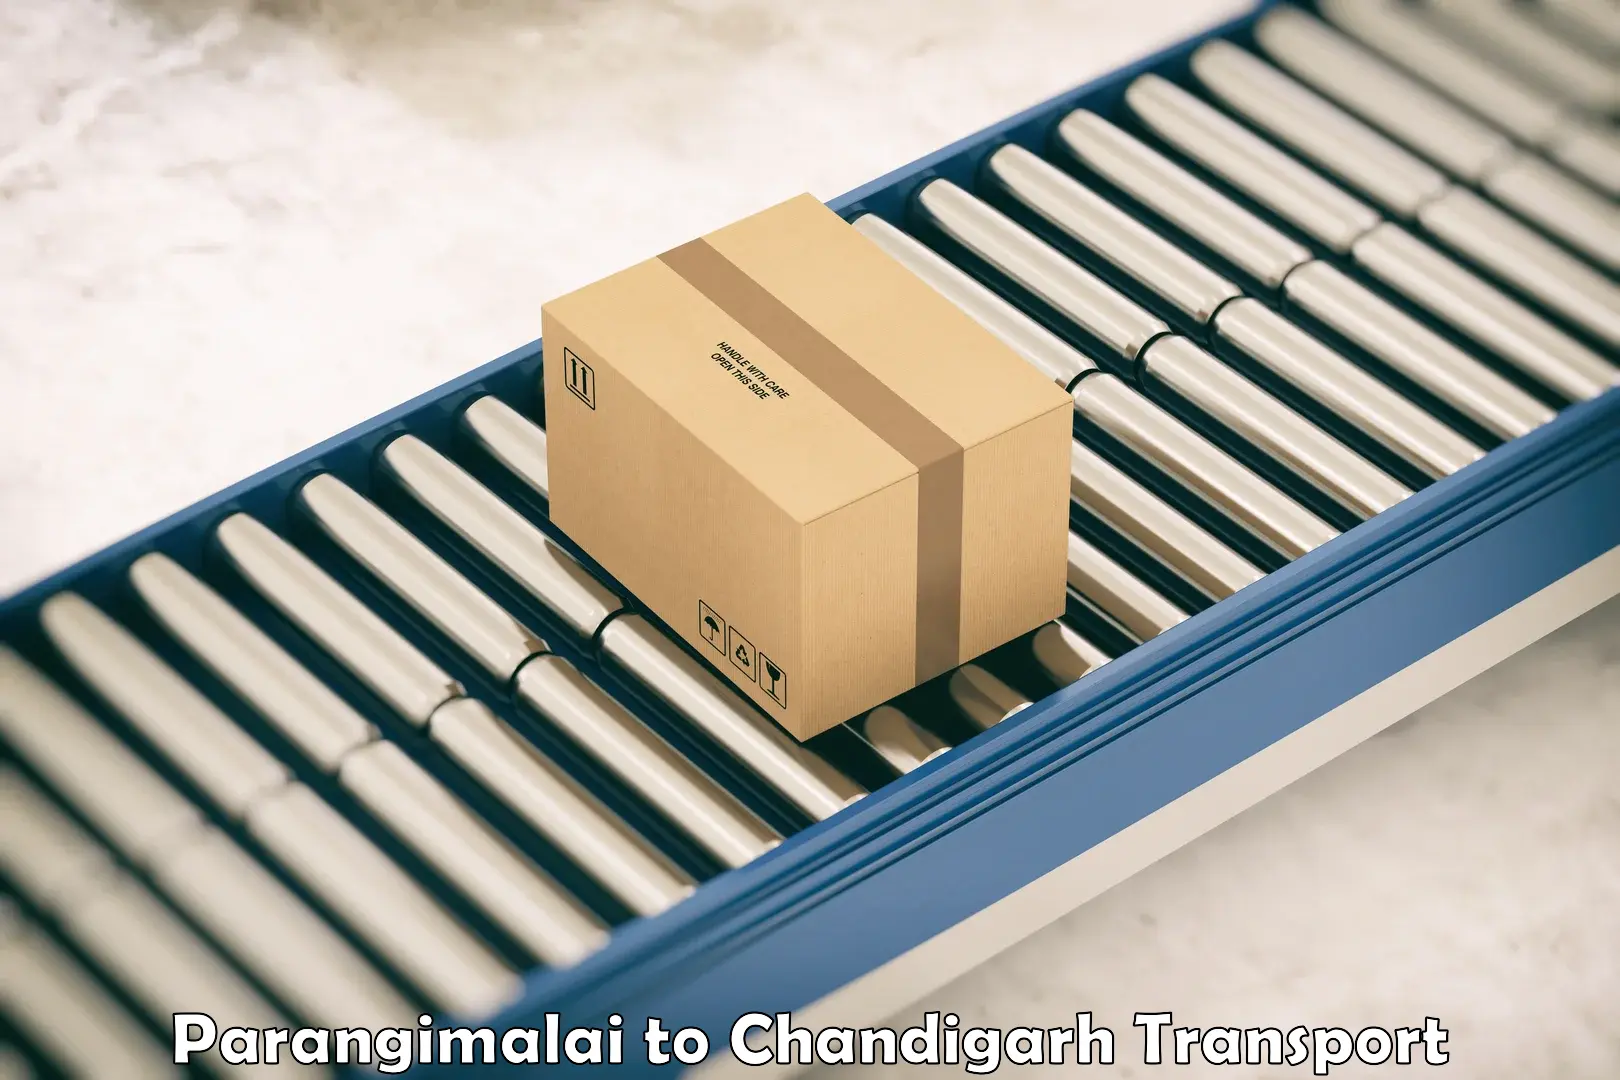 Container transport service Parangimalai to Kharar